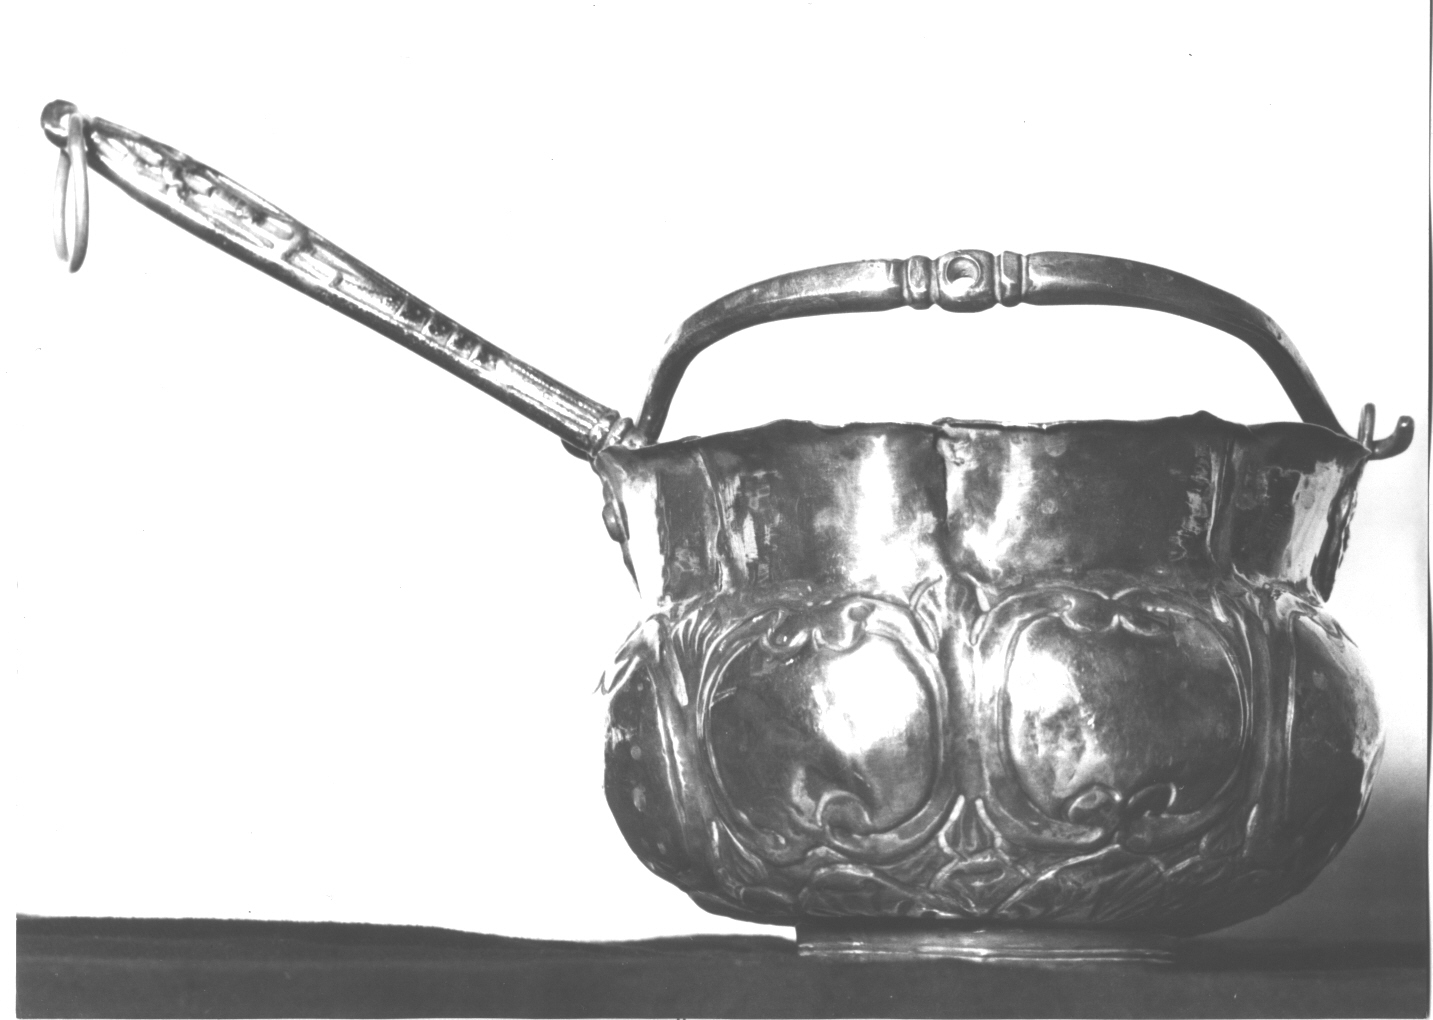 motivi decorativi a volute/ teste di animali (secchiello per l'acqua benedetta, opera isolata) - bottega ligure (secc. XVII/ XVIII)